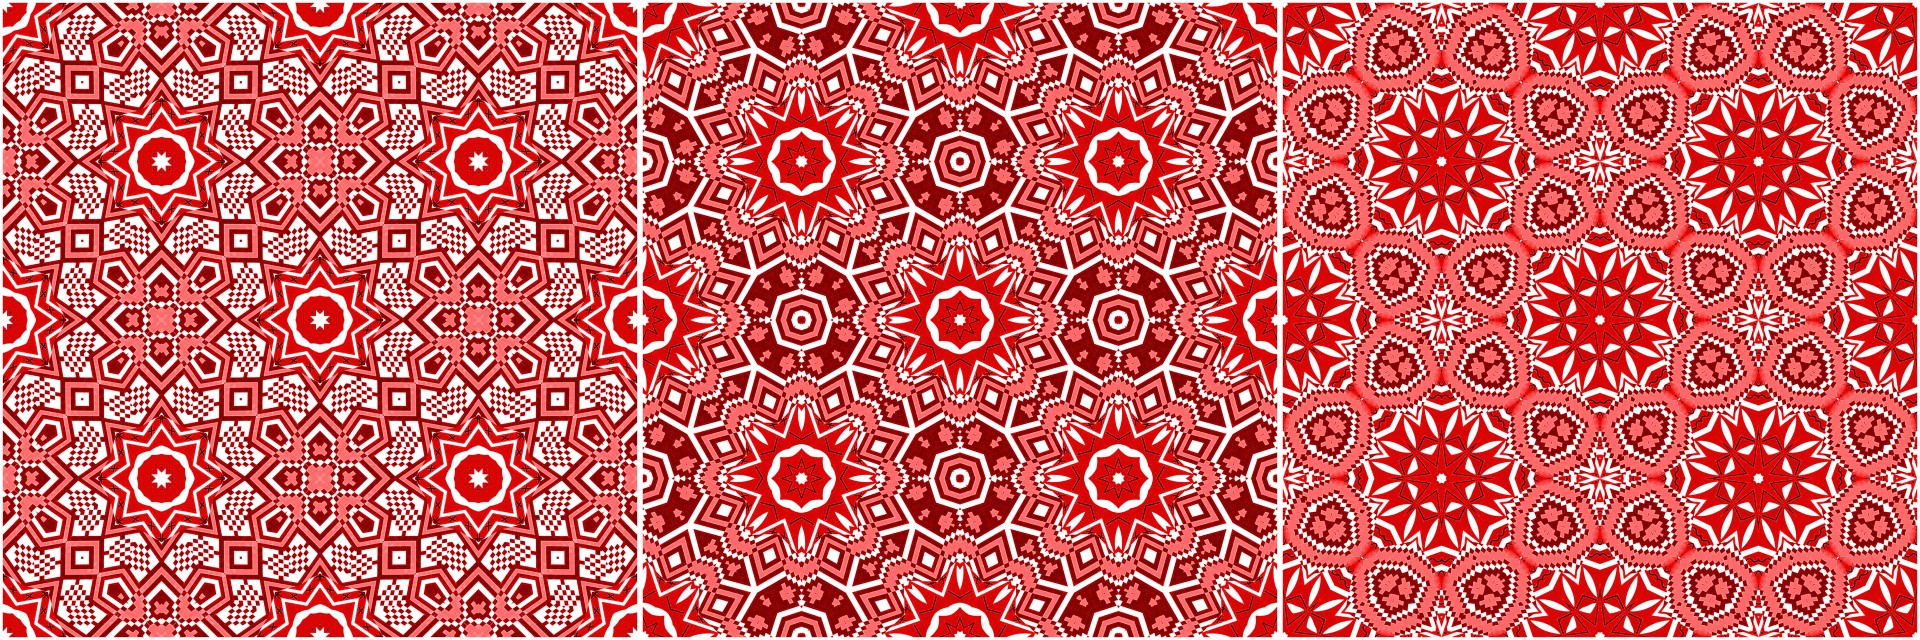 seamless pattern kaleidoscope free photo